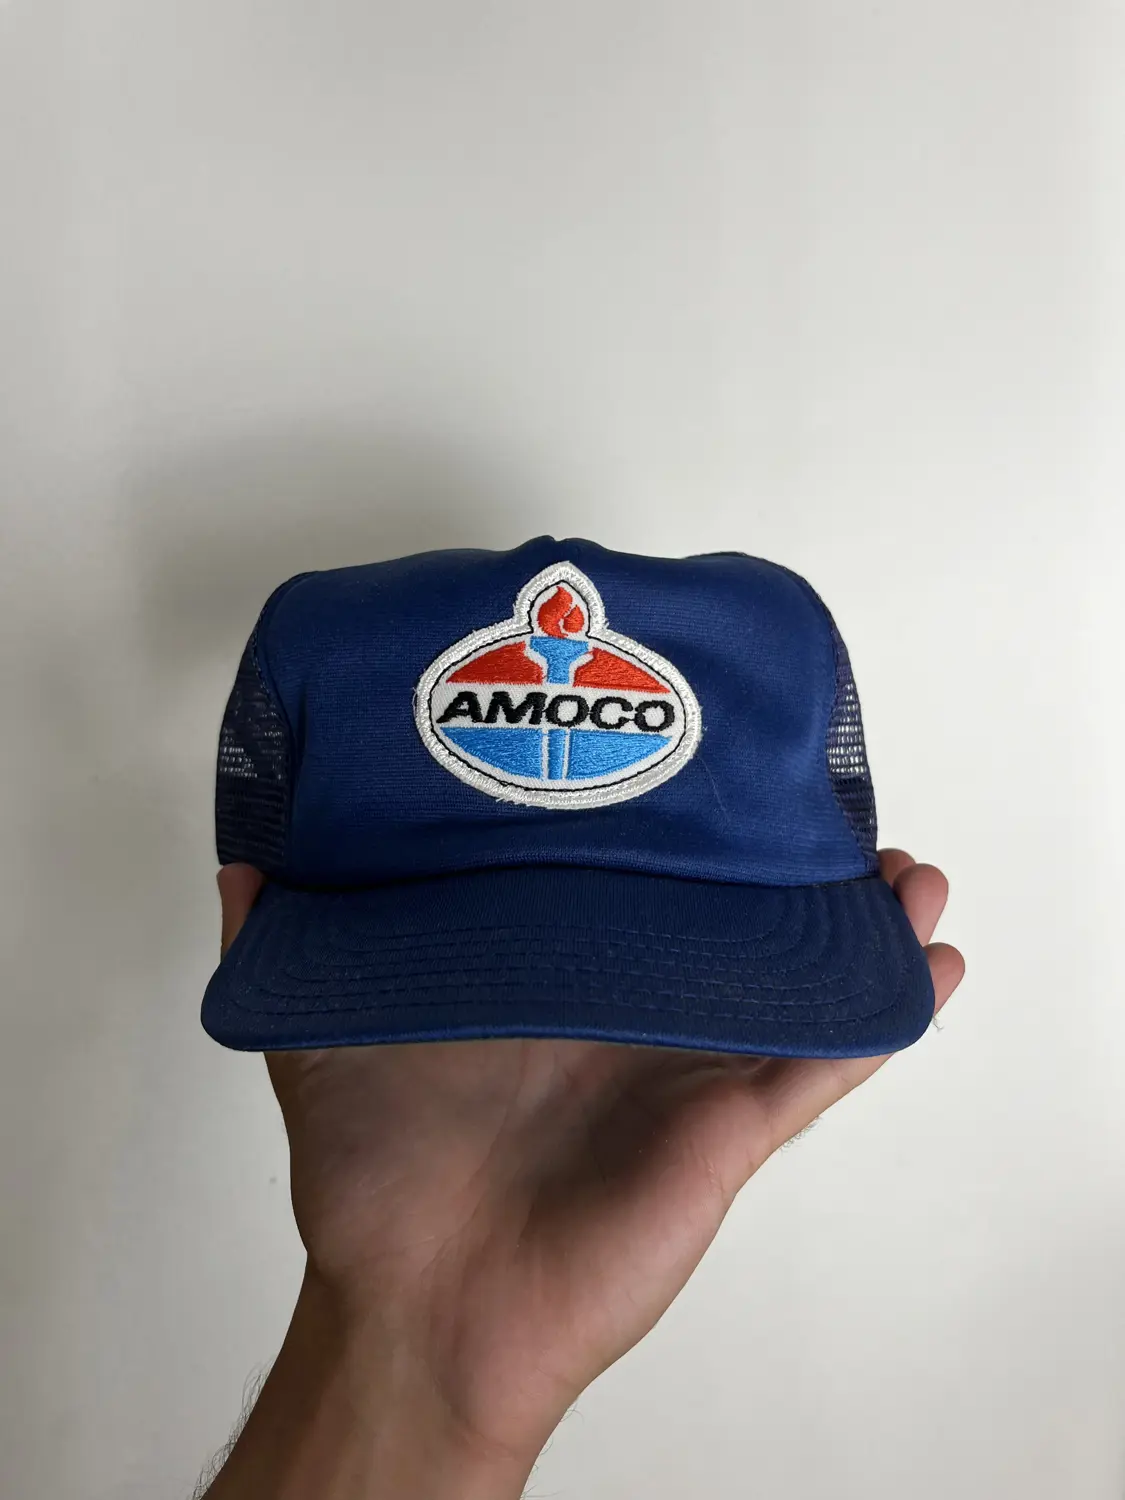 Vintage Amoco SnapBack